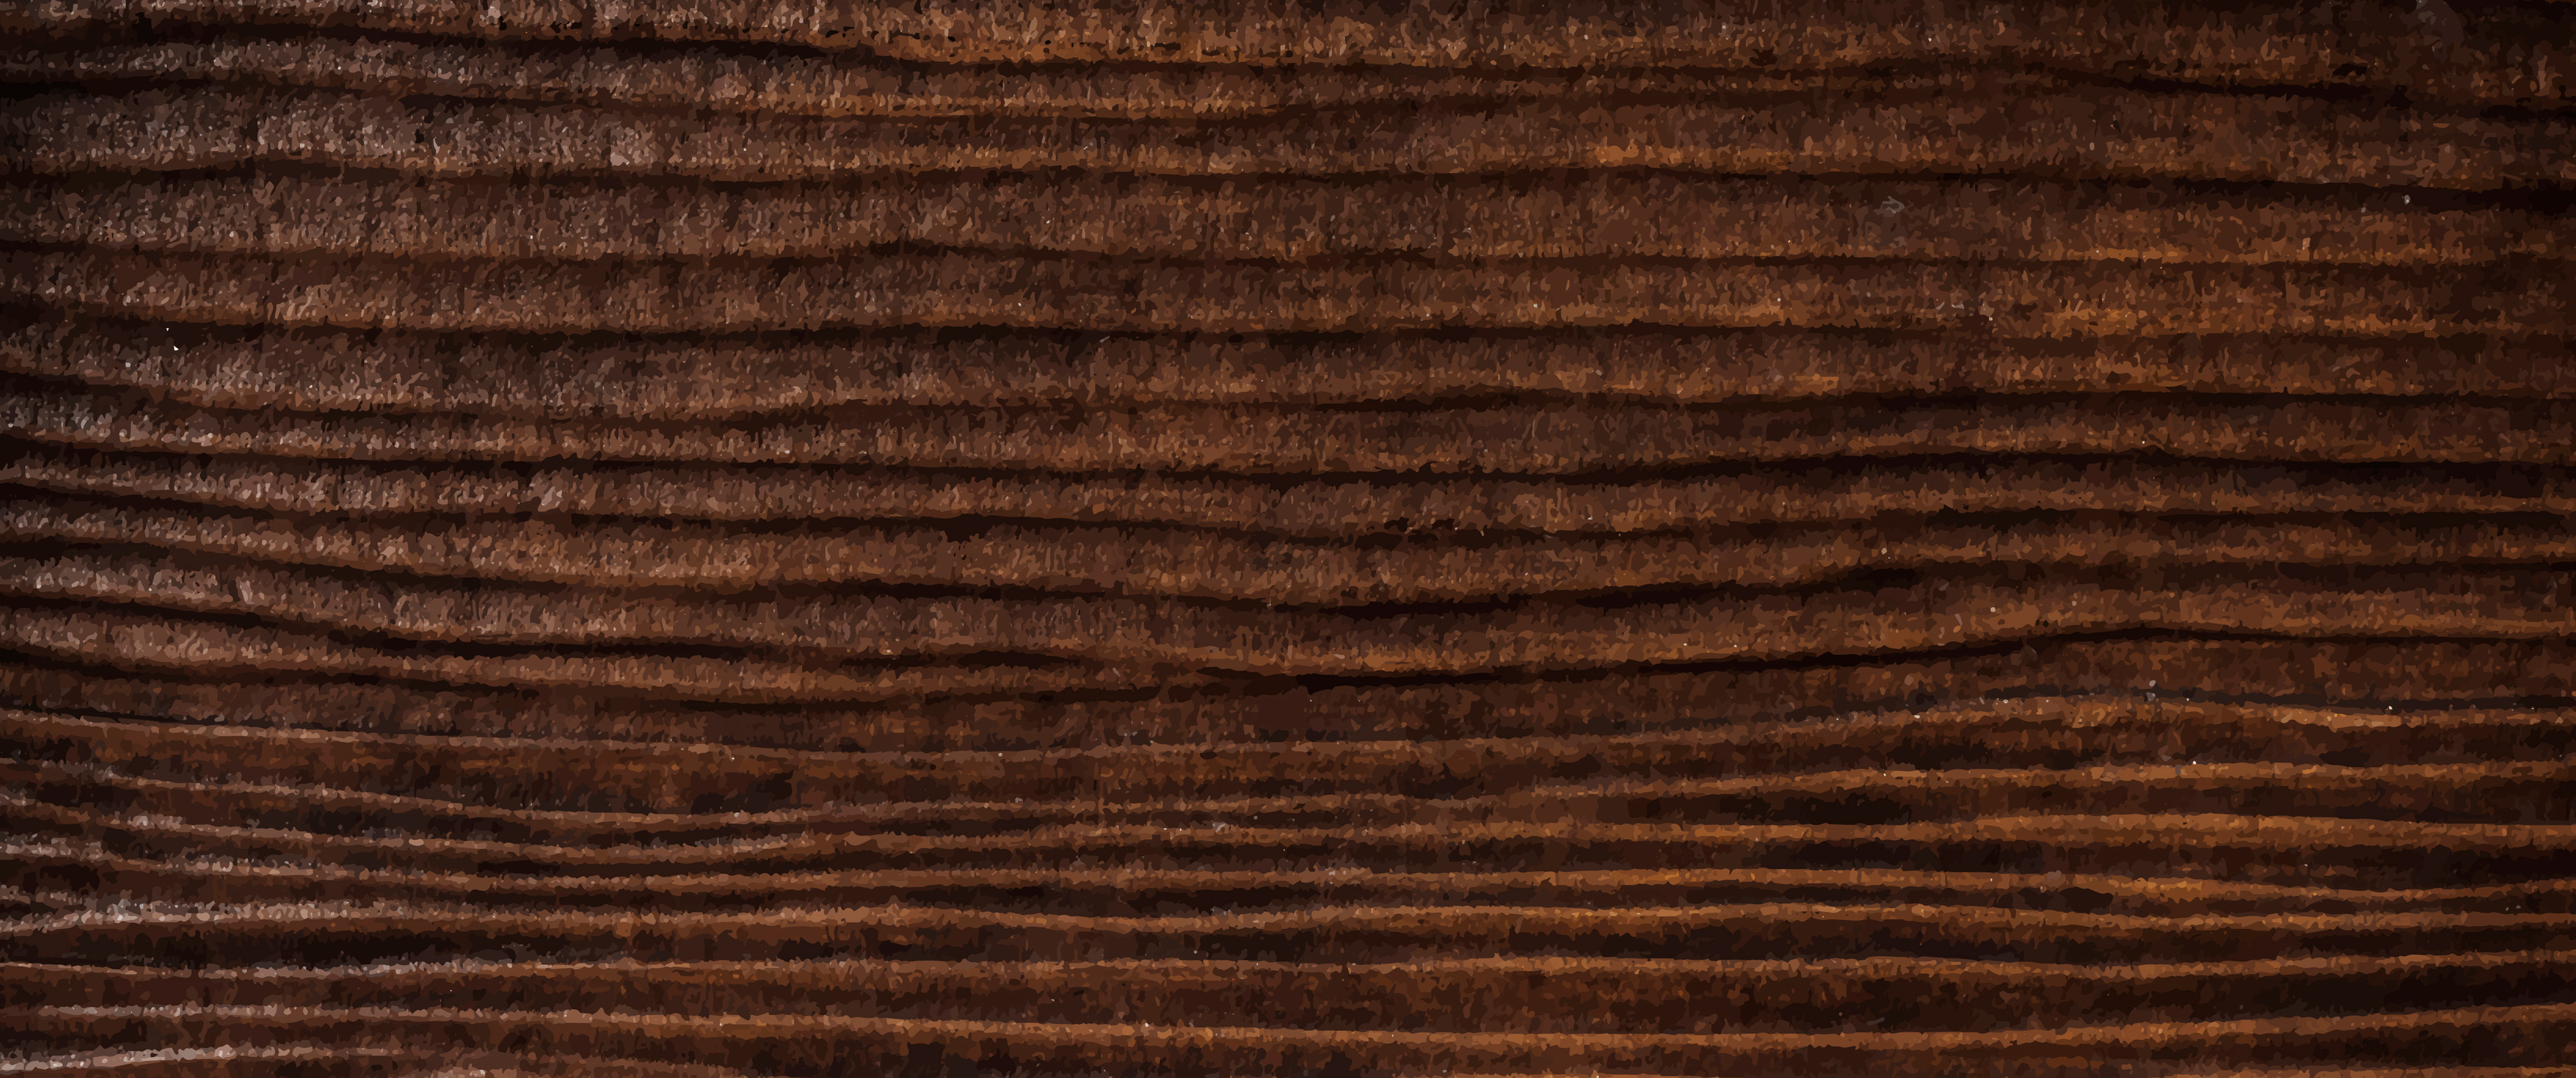 Tường gỗ: Tối giản và tinh tế là chủ đạo của phong cách nội thất hiện đại, và tường gỗ là một lựa chọn tuyệt vời để mang lại cảm giác ấm áp và gần gũi cho mọi không gian. Hãy khám phá sự đa dạng và độc đáo của các loại tường gỗ đẹp mắt.